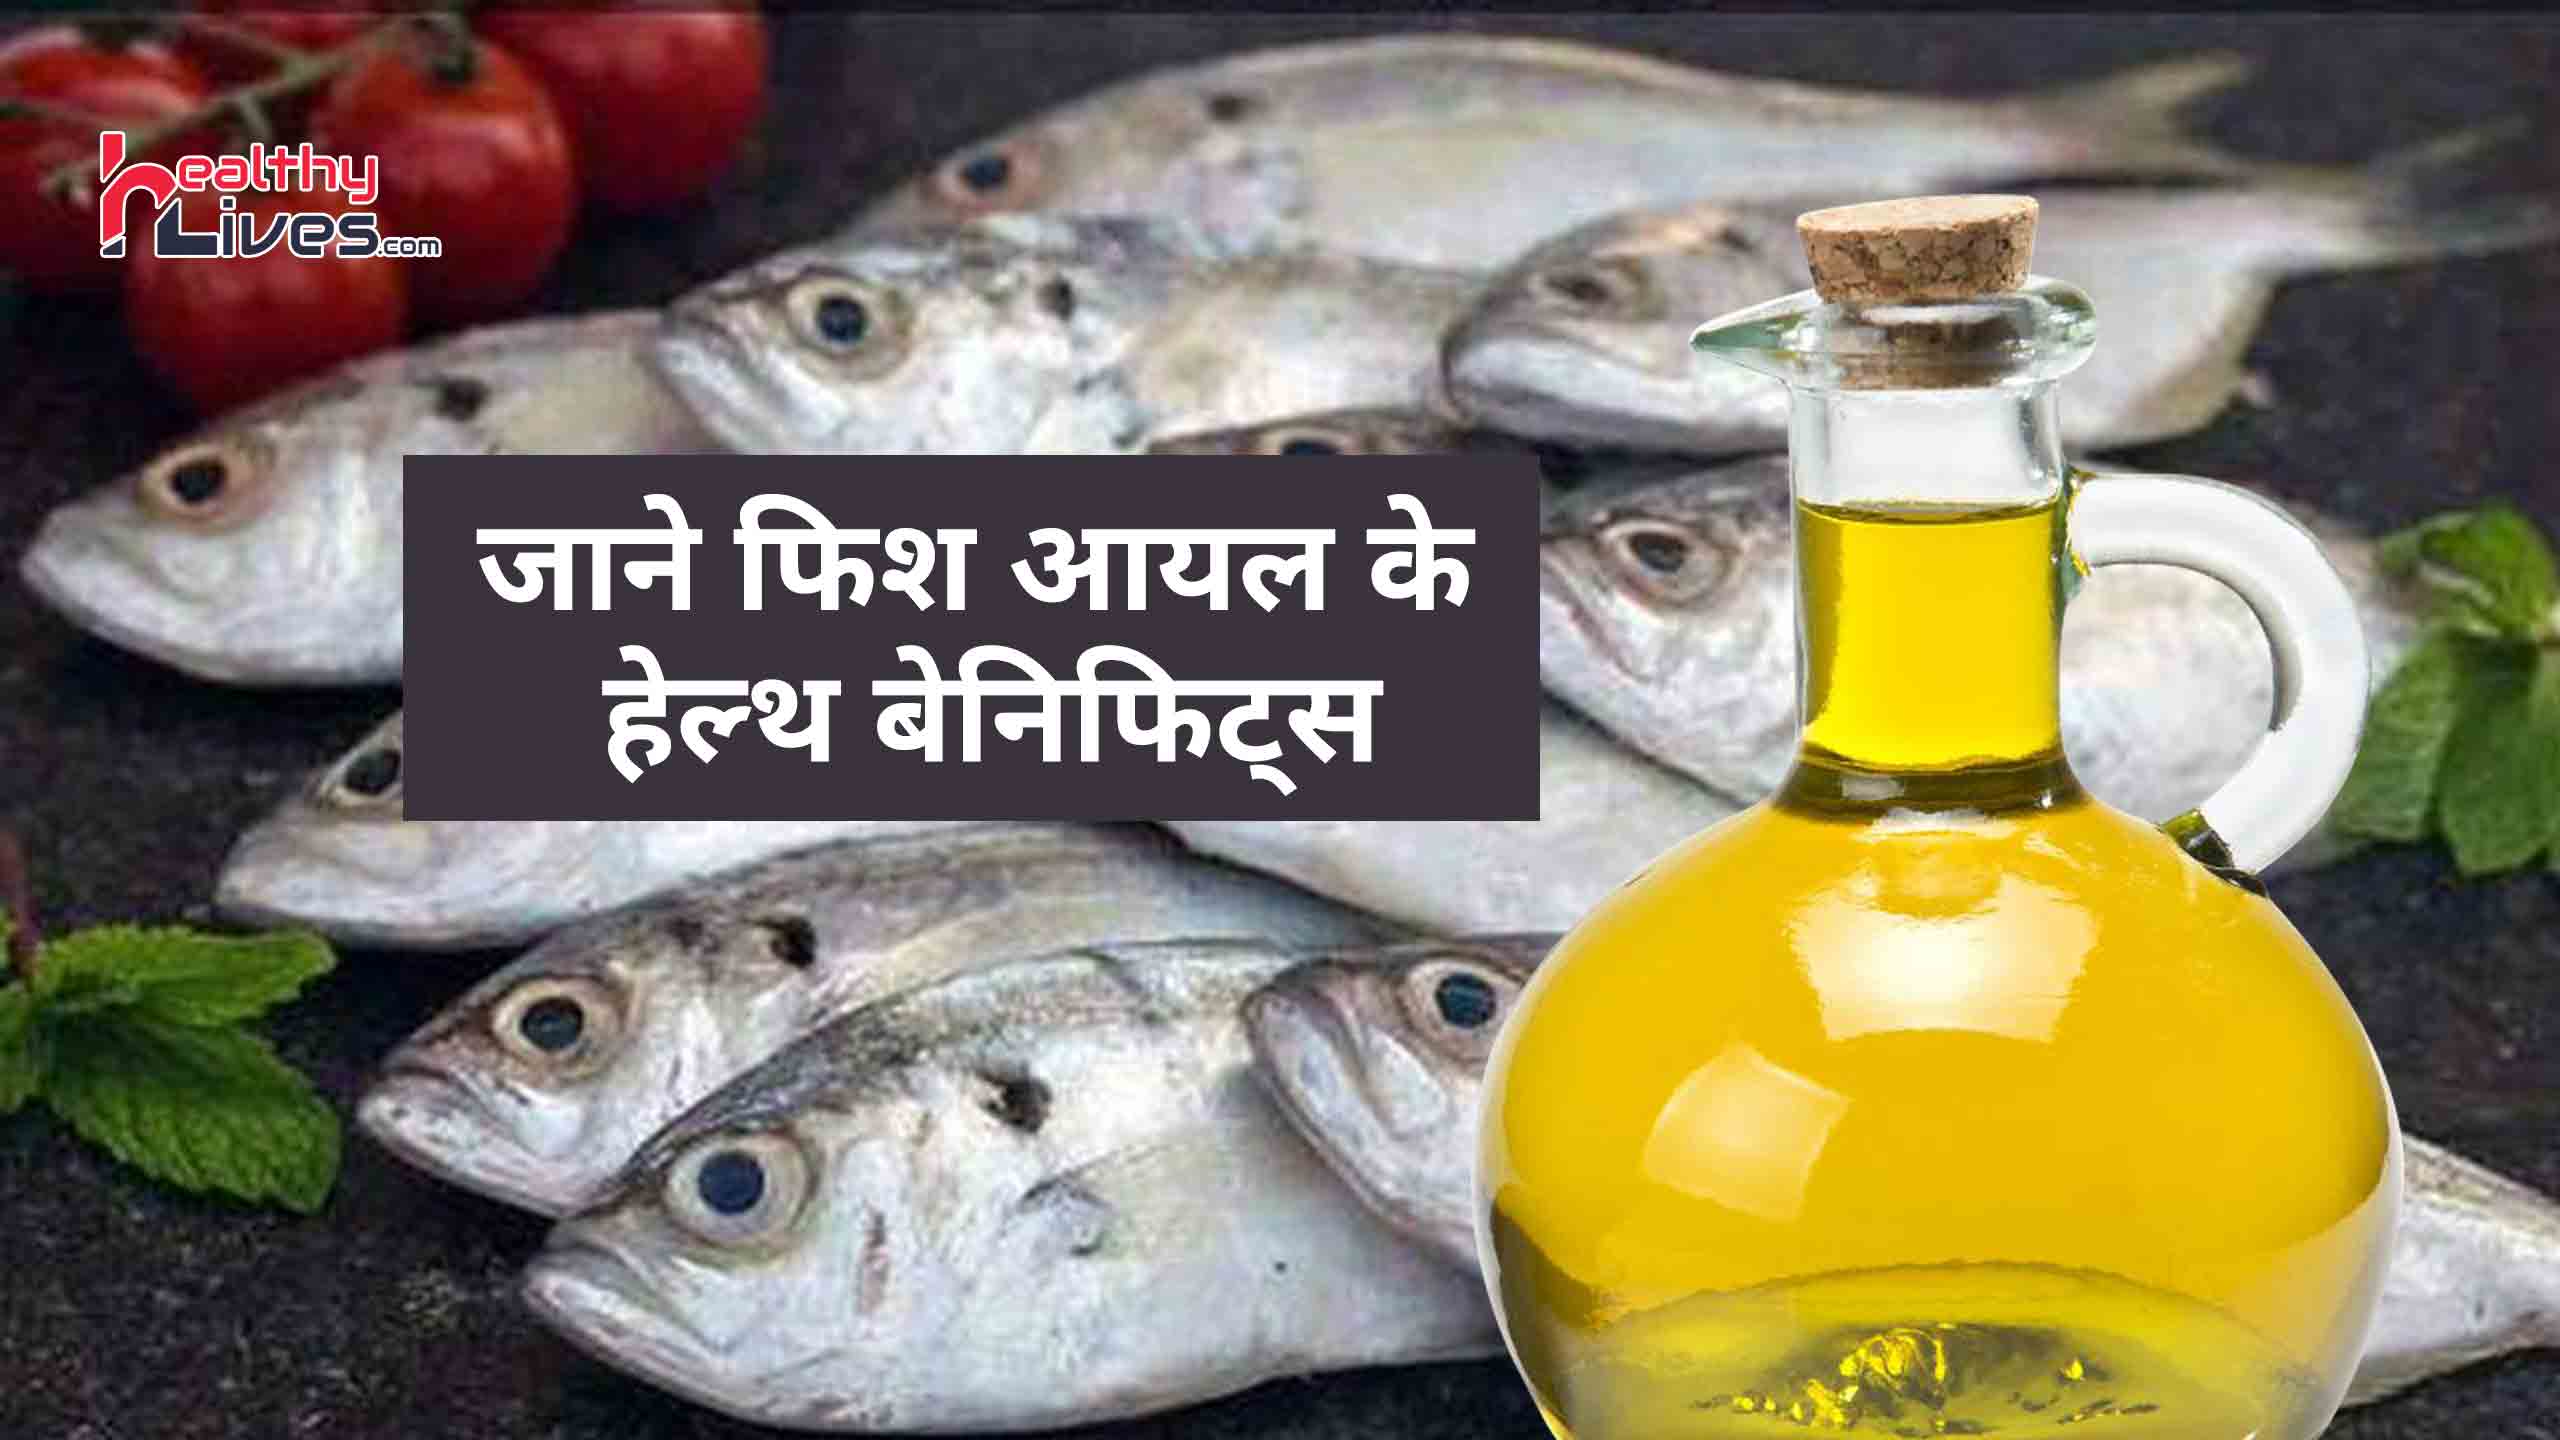 Fish Oil Ke Fayde: मछली के तेल के सेवन से होते हैं कई लाभ, जाने इसके फायदे